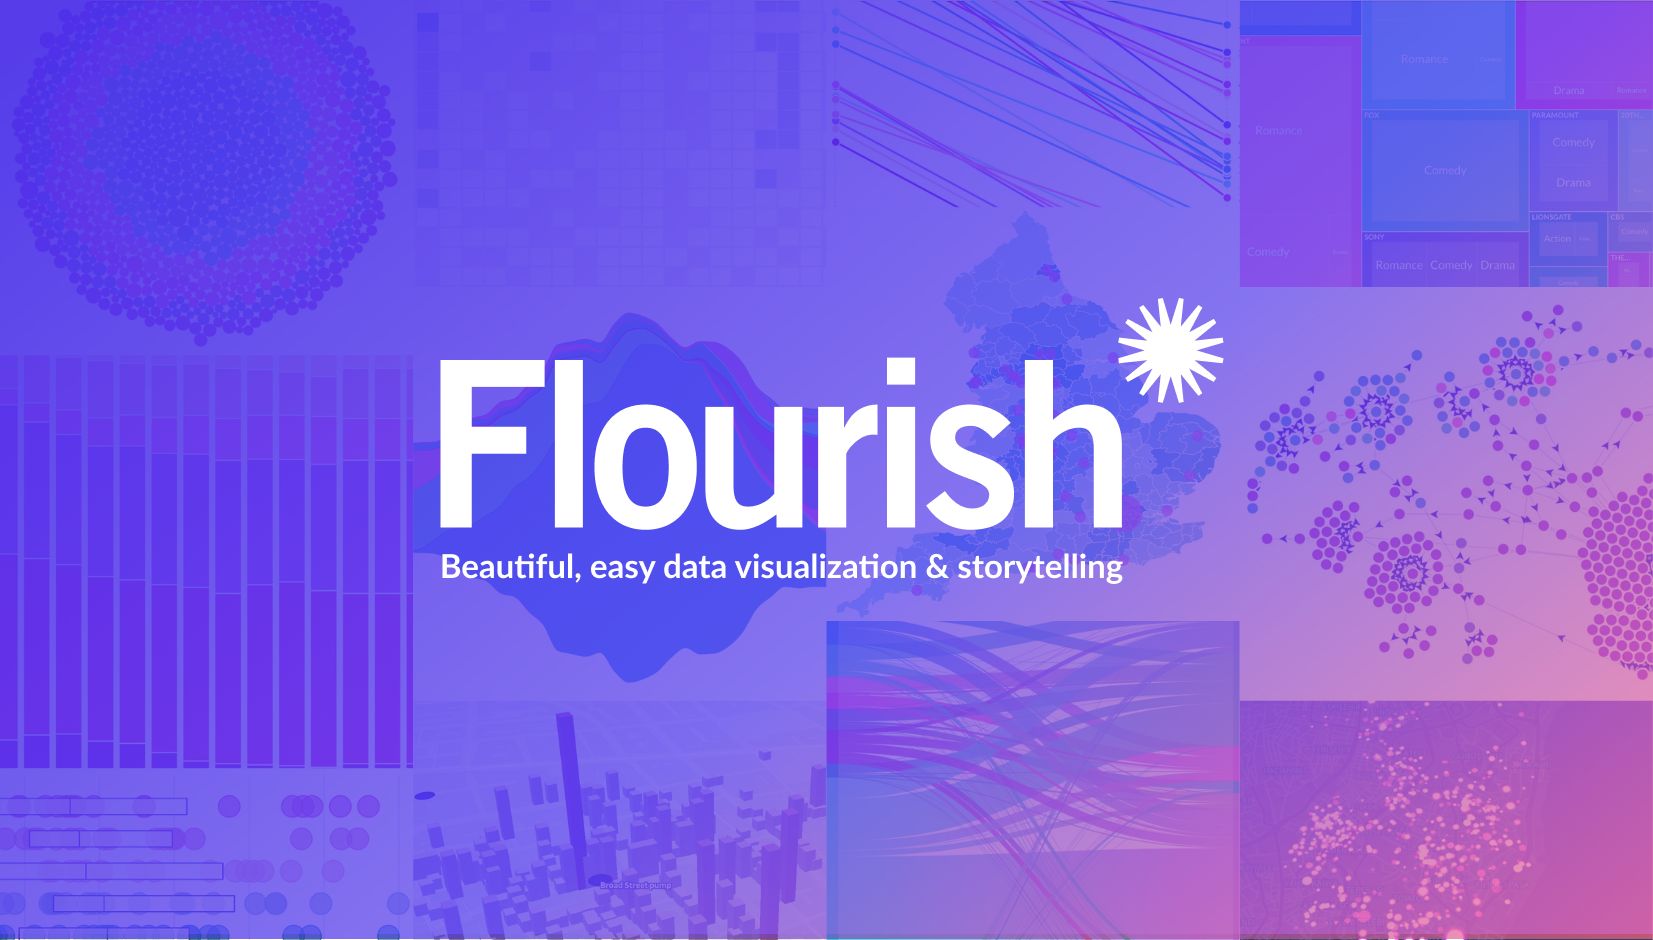 Flourish: The no-code data visualization platform explained